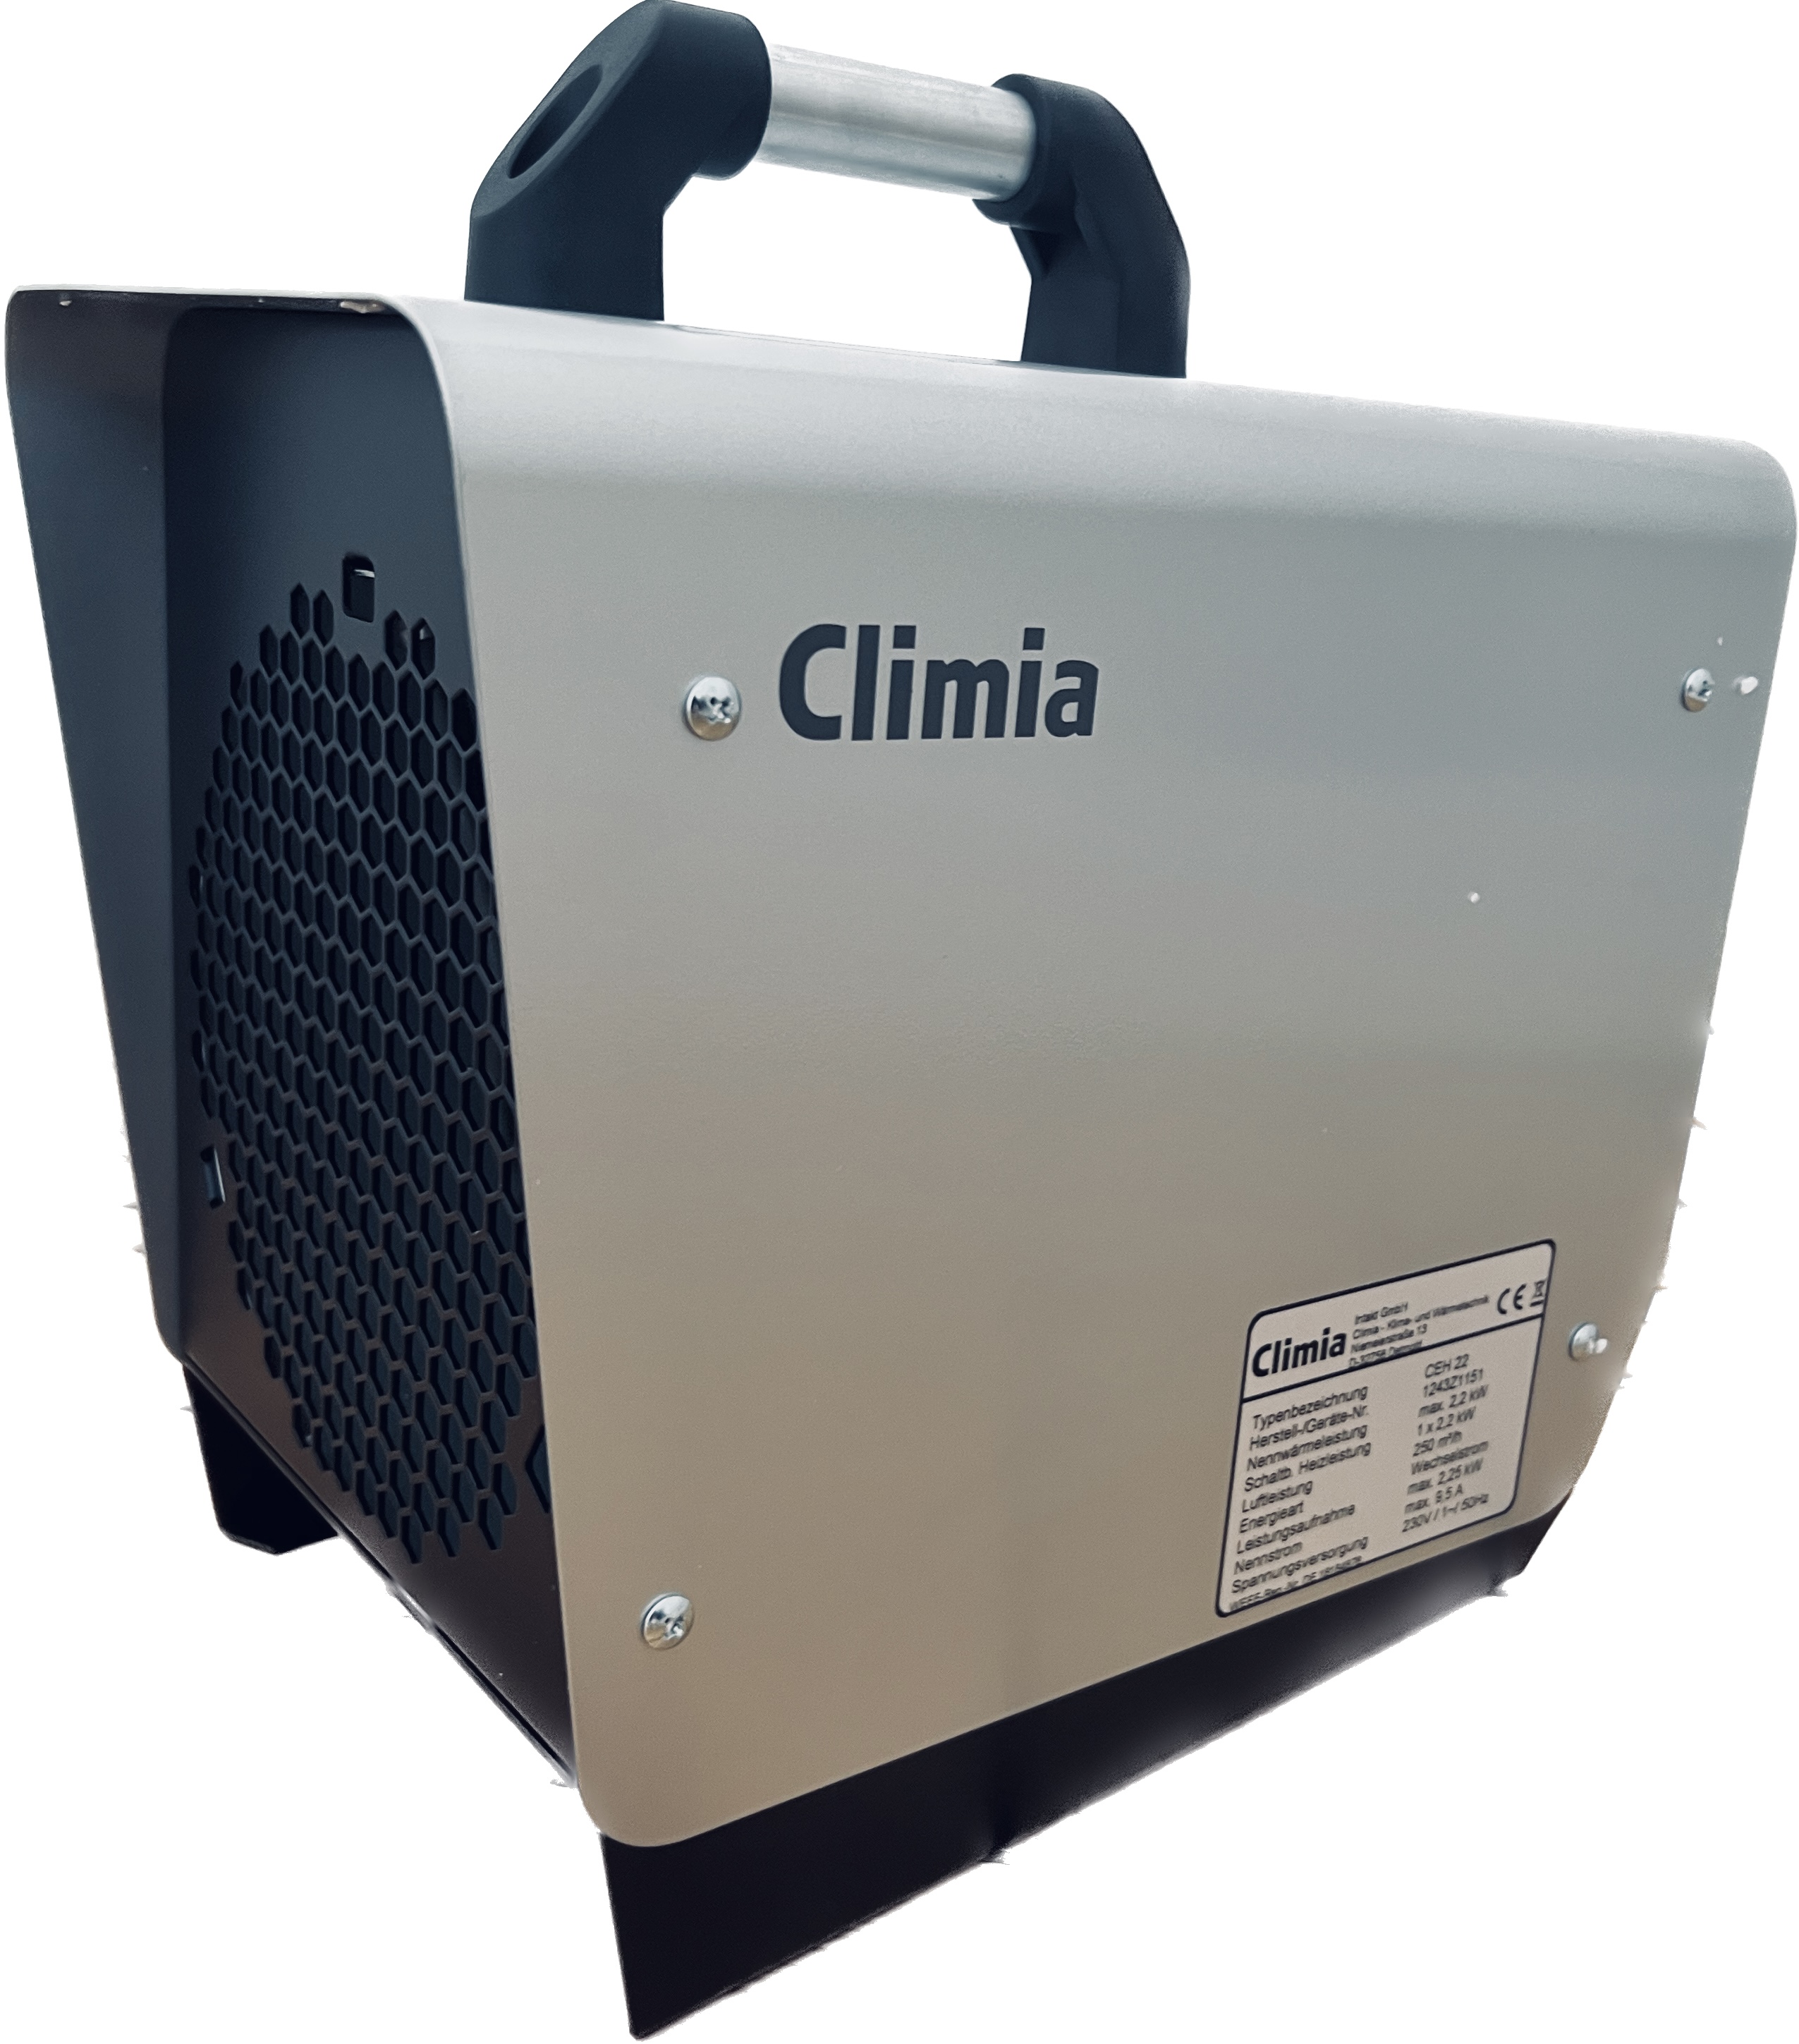 Climia CEH 22 - Frostwächter, Trocknungsgerät für schnelle Wärme. Farbon: Silber